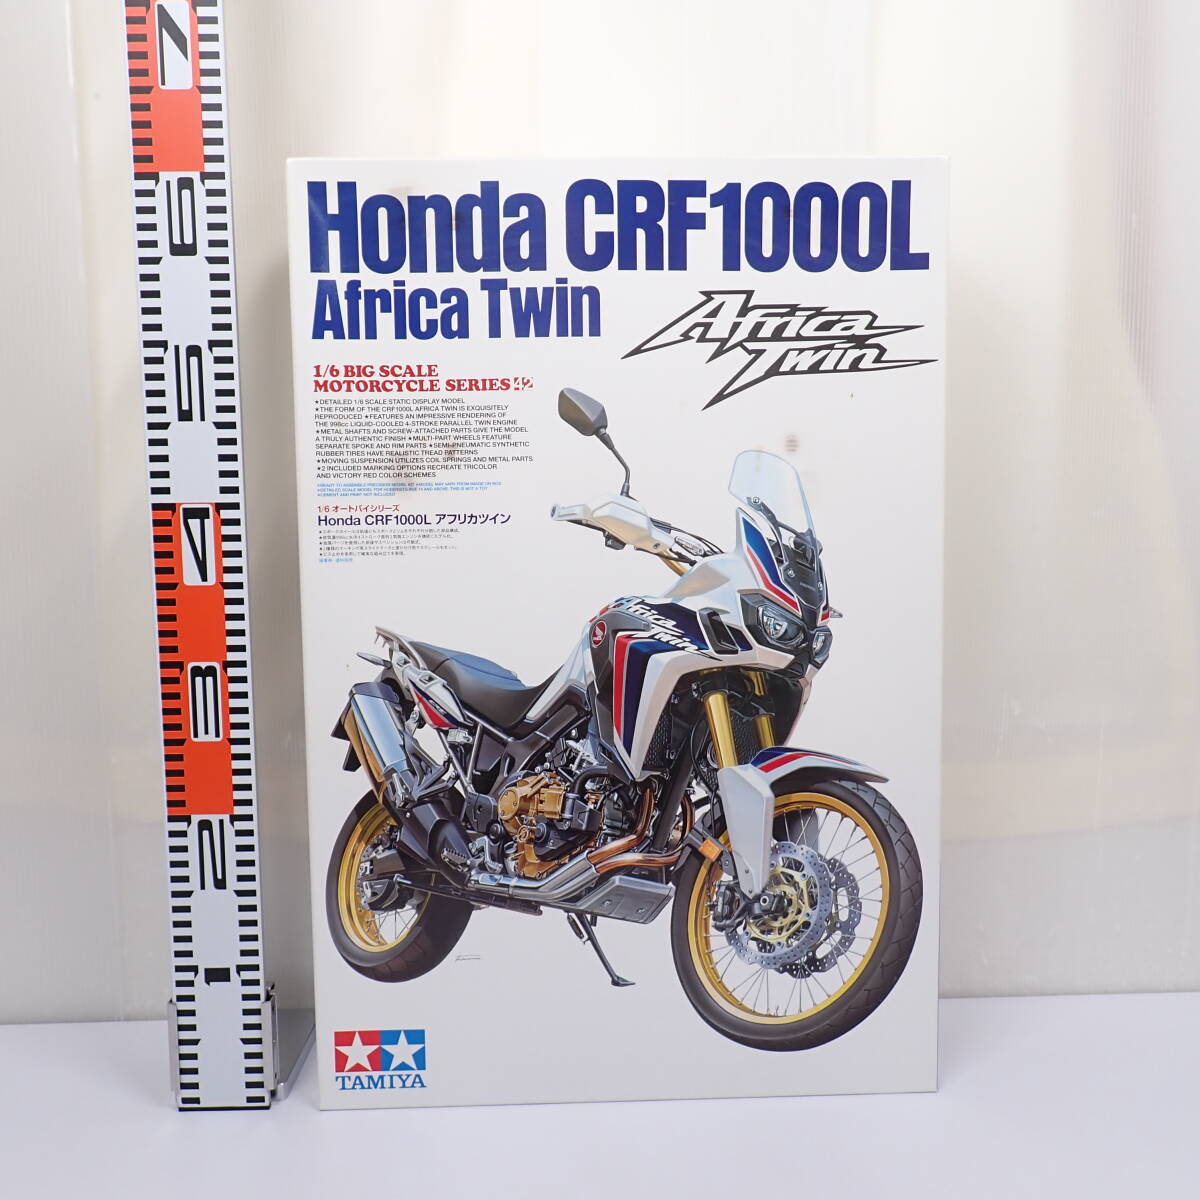 未組立 1/6 Honda CRF1000L Africa Twin アフリカツイン ビッグスケール オートバイシリーズ No.42 ホンダ タミヤの画像1